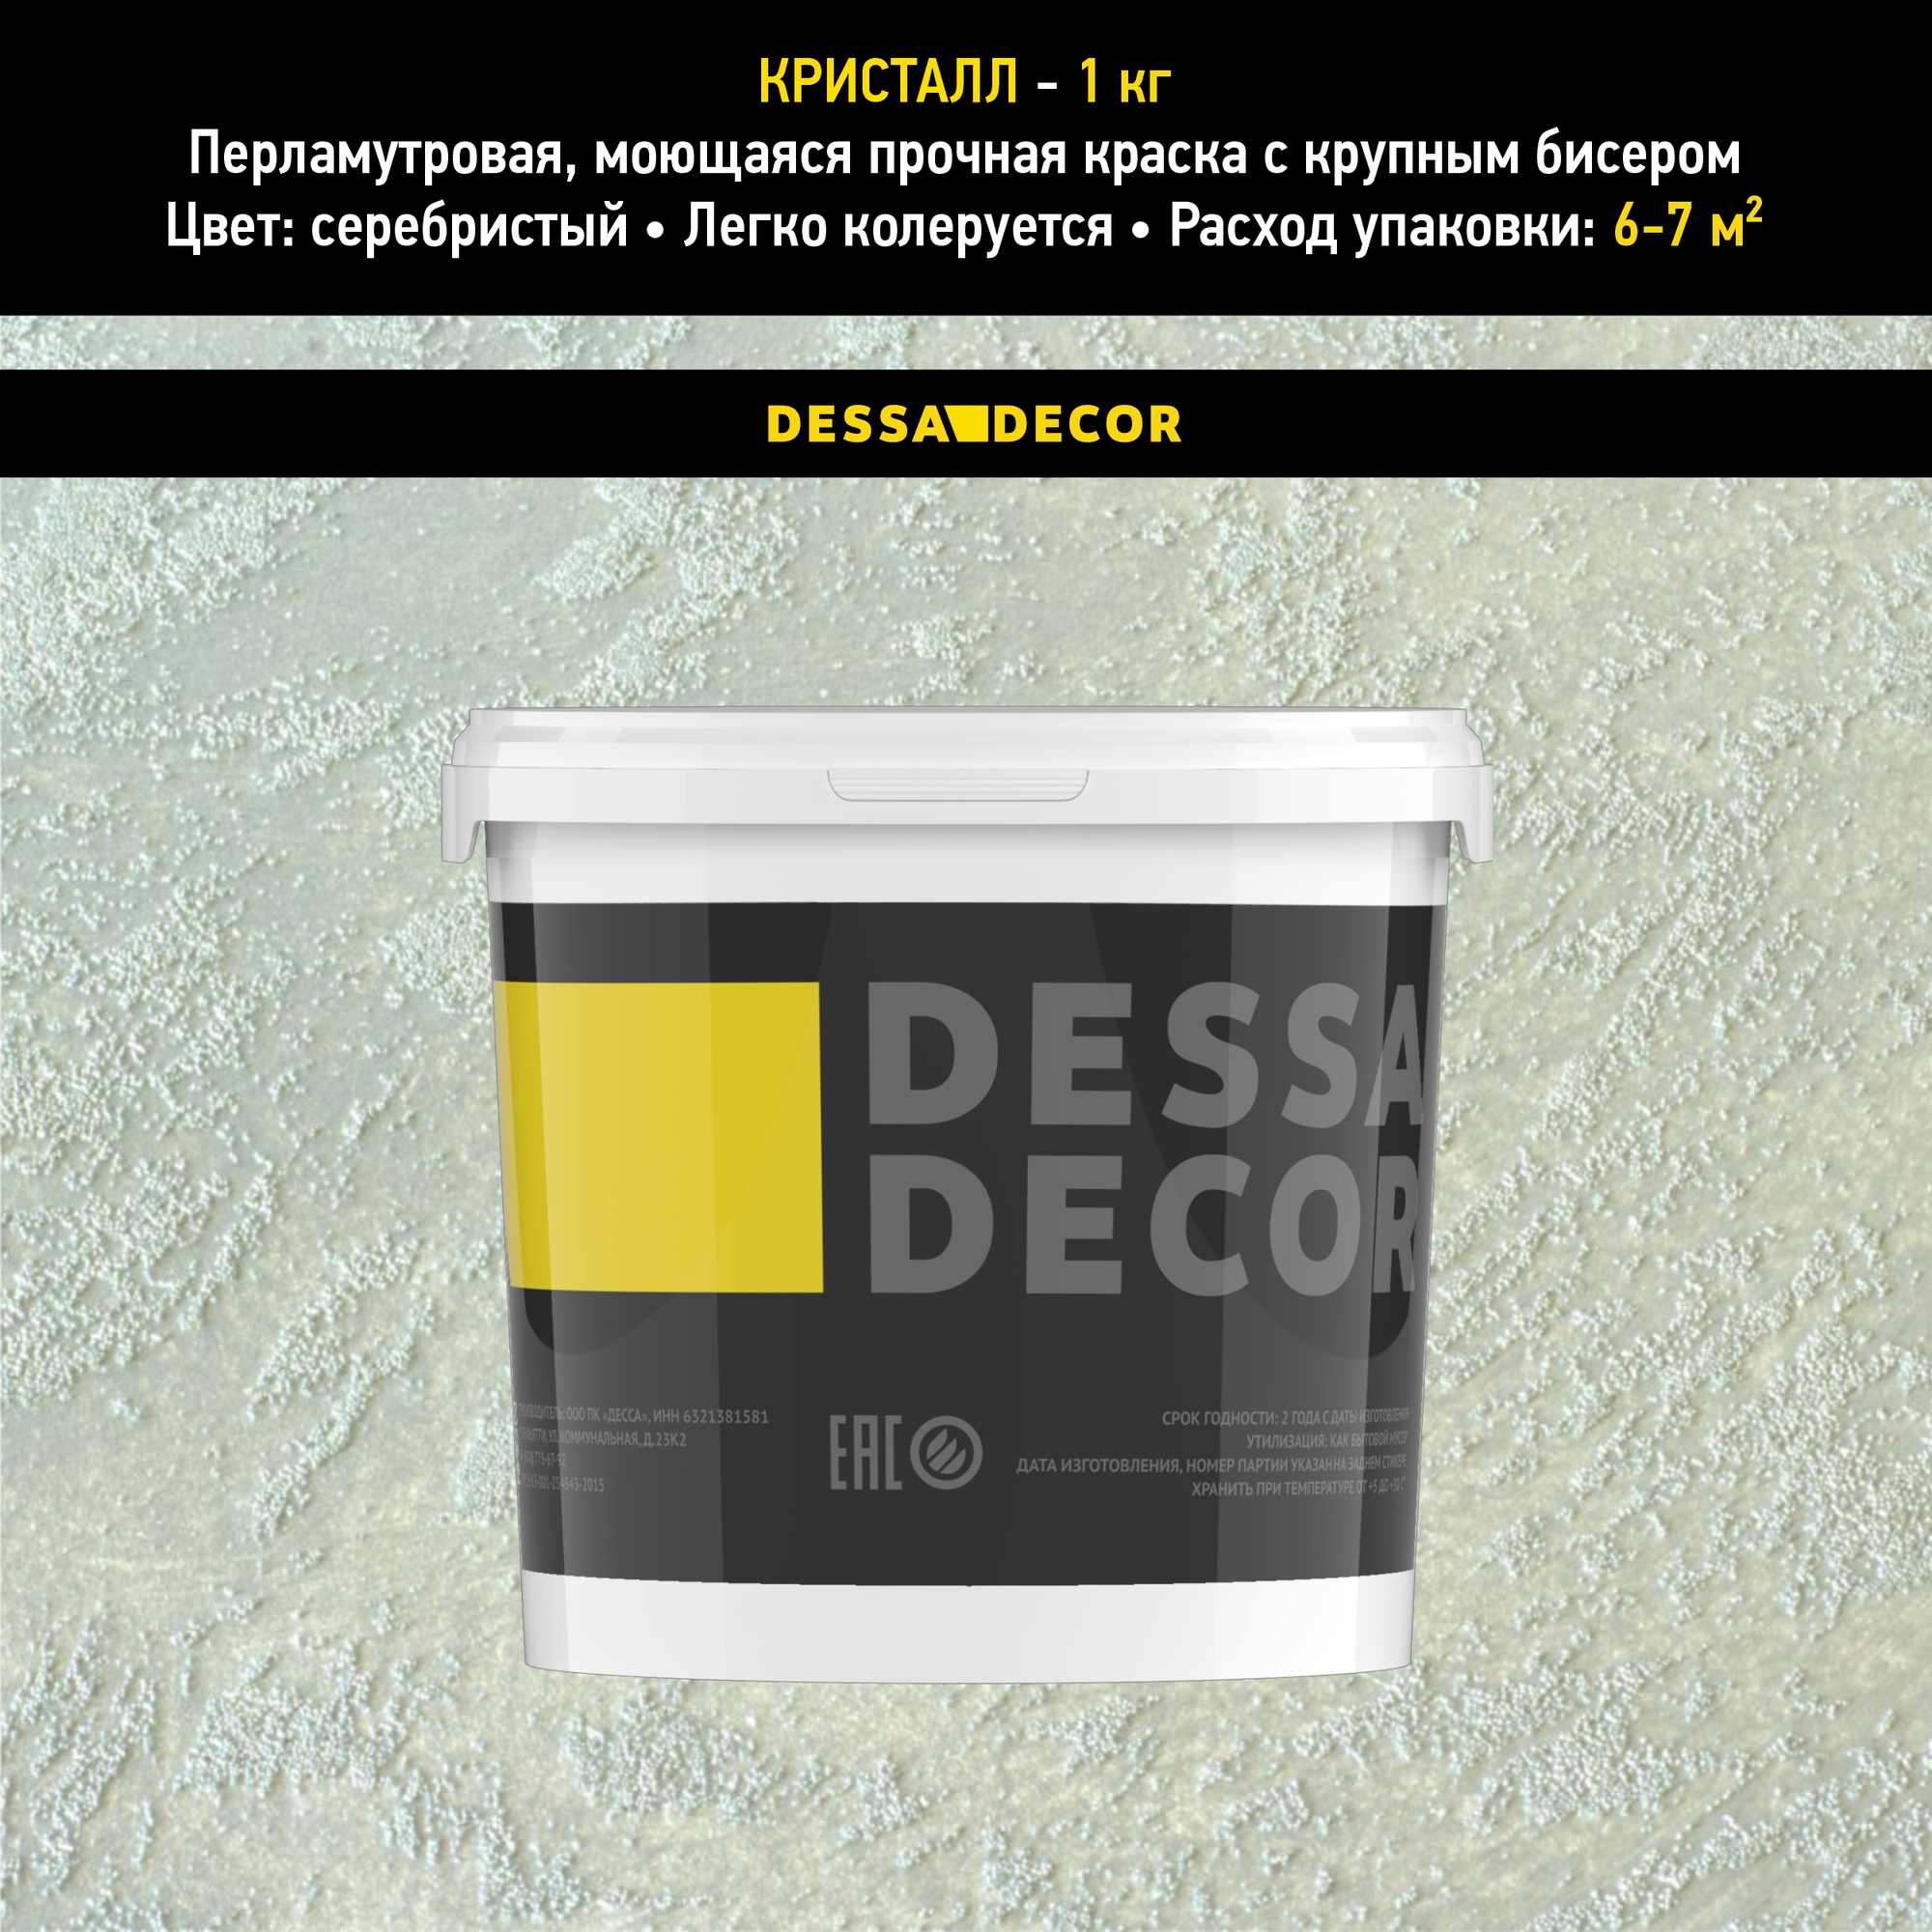 Декоративная краска для стен DESSA DECOR Кристалл 5 кг перламутровая декоративная штукатурка для стен для имитации песчаной поверхности